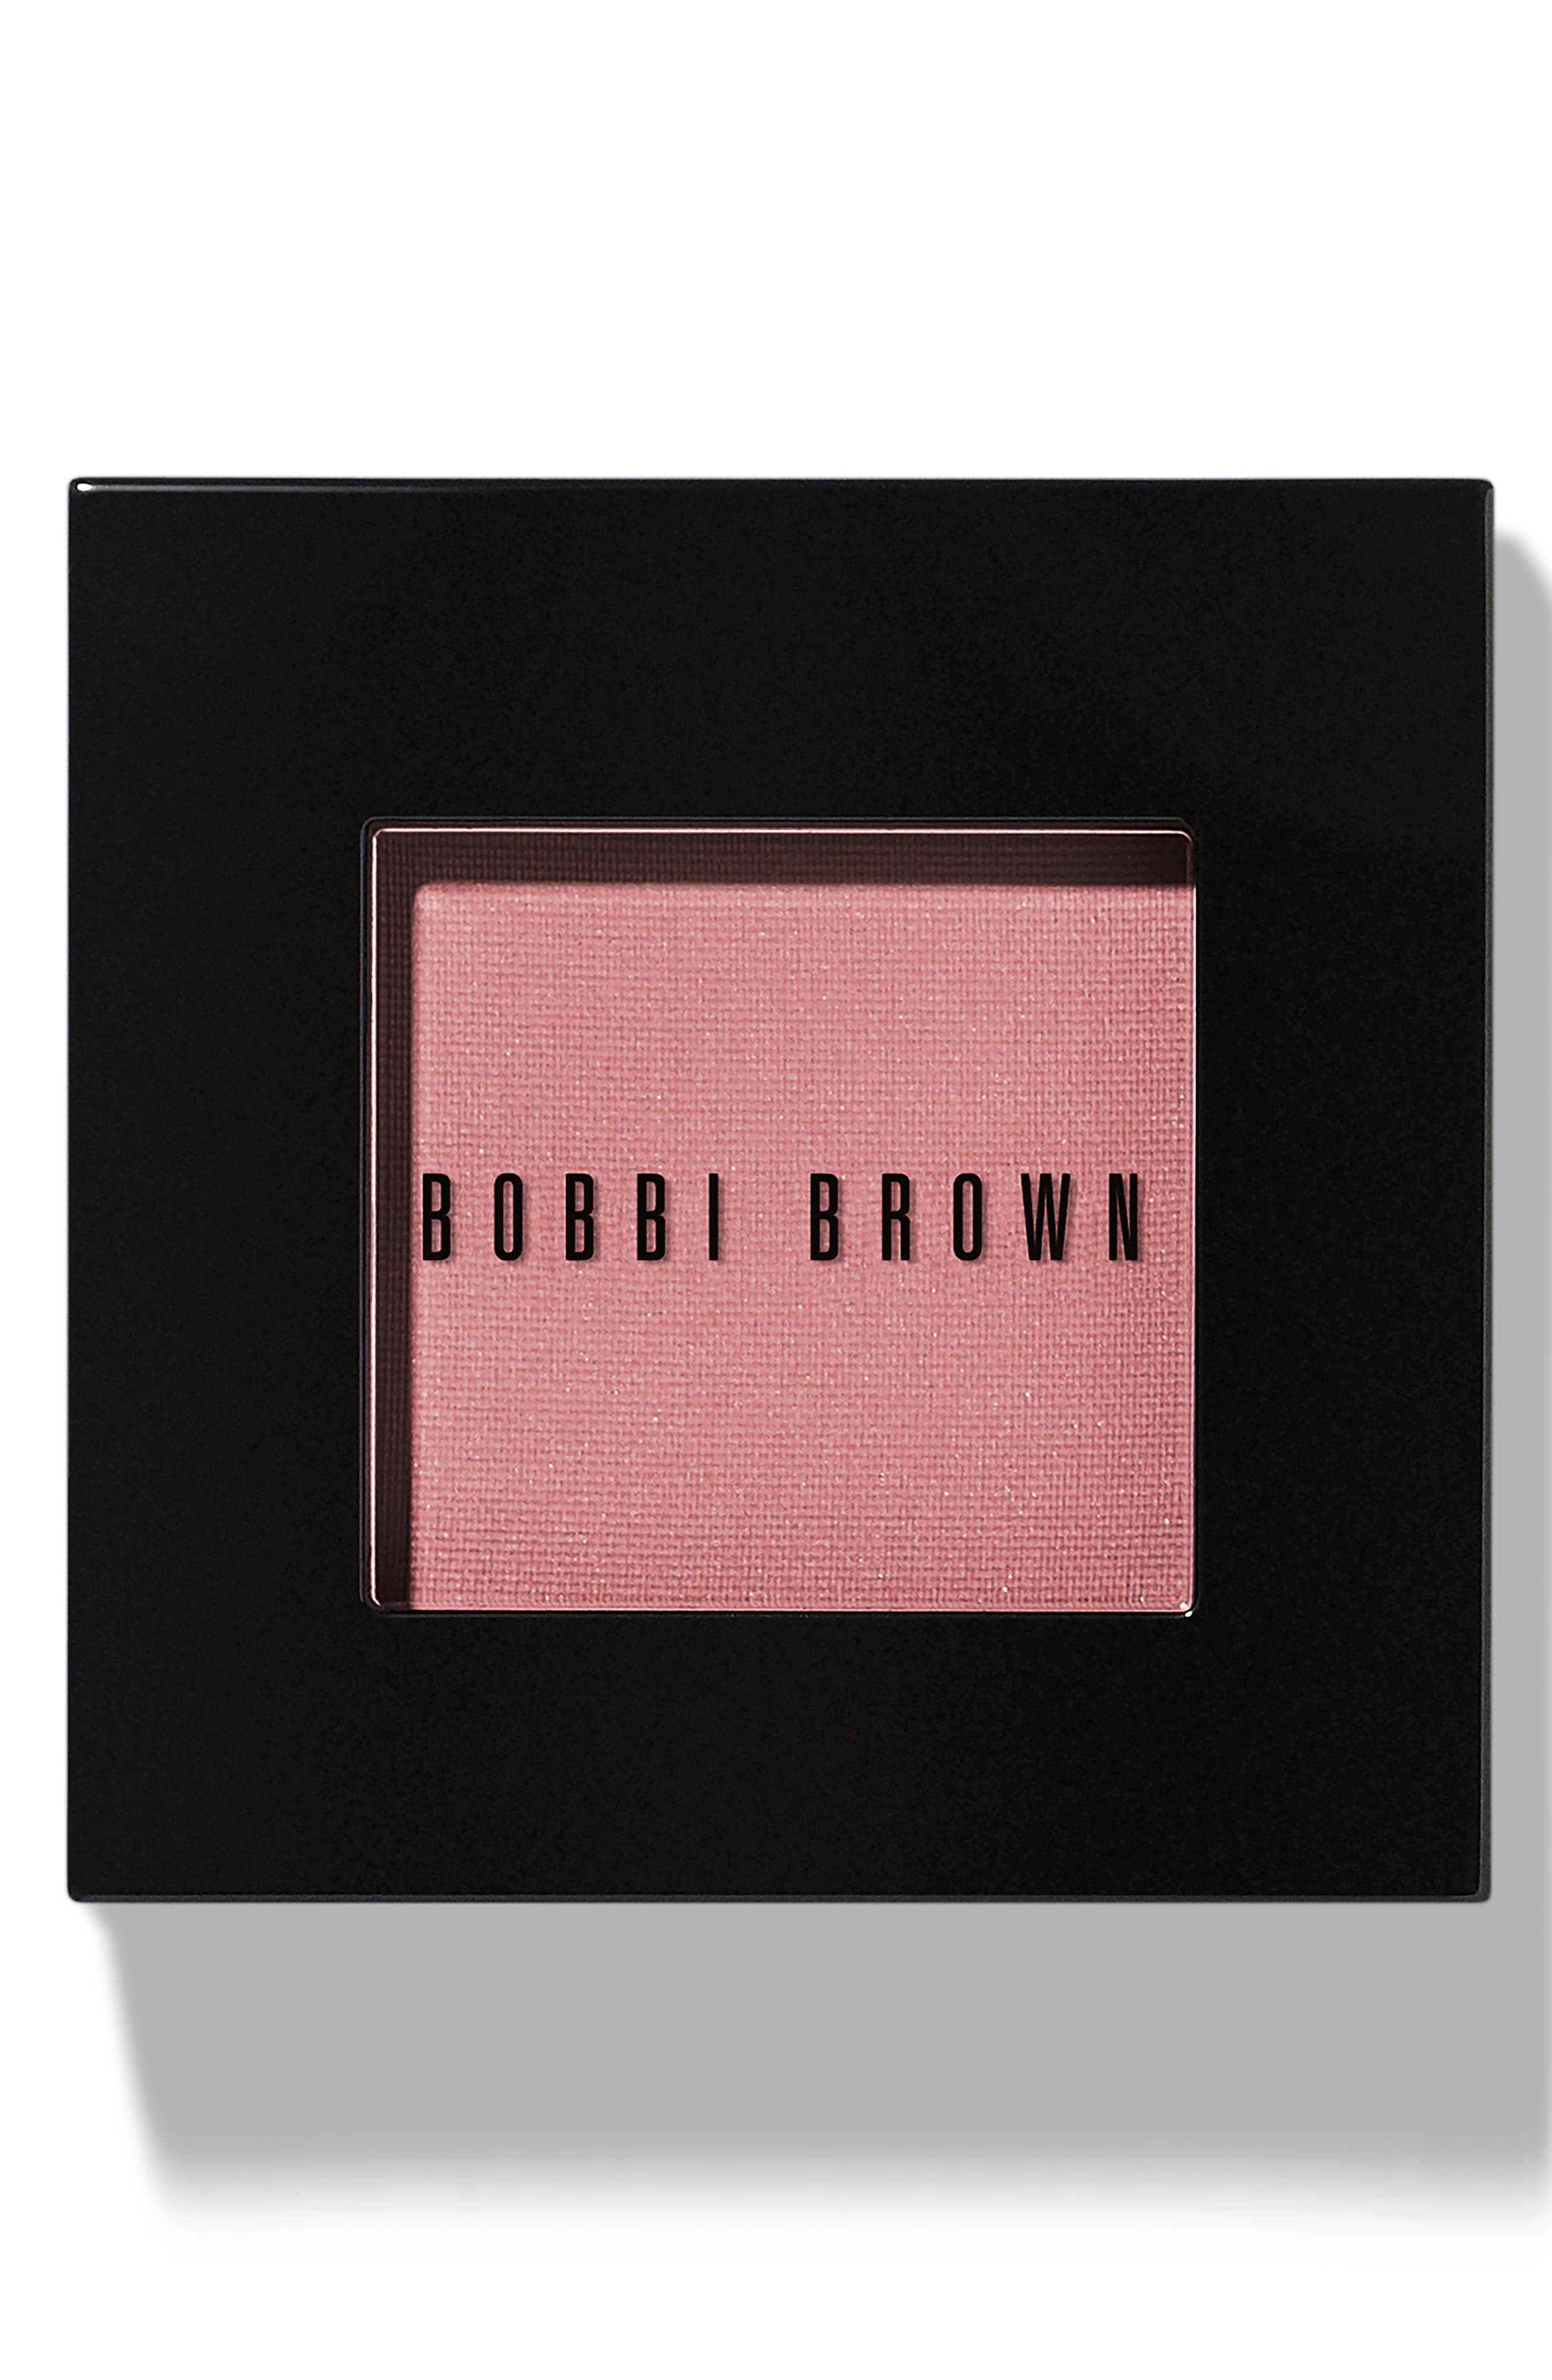 Bobbi Brown Matte Finish Long-wearing Blush In 18desert P